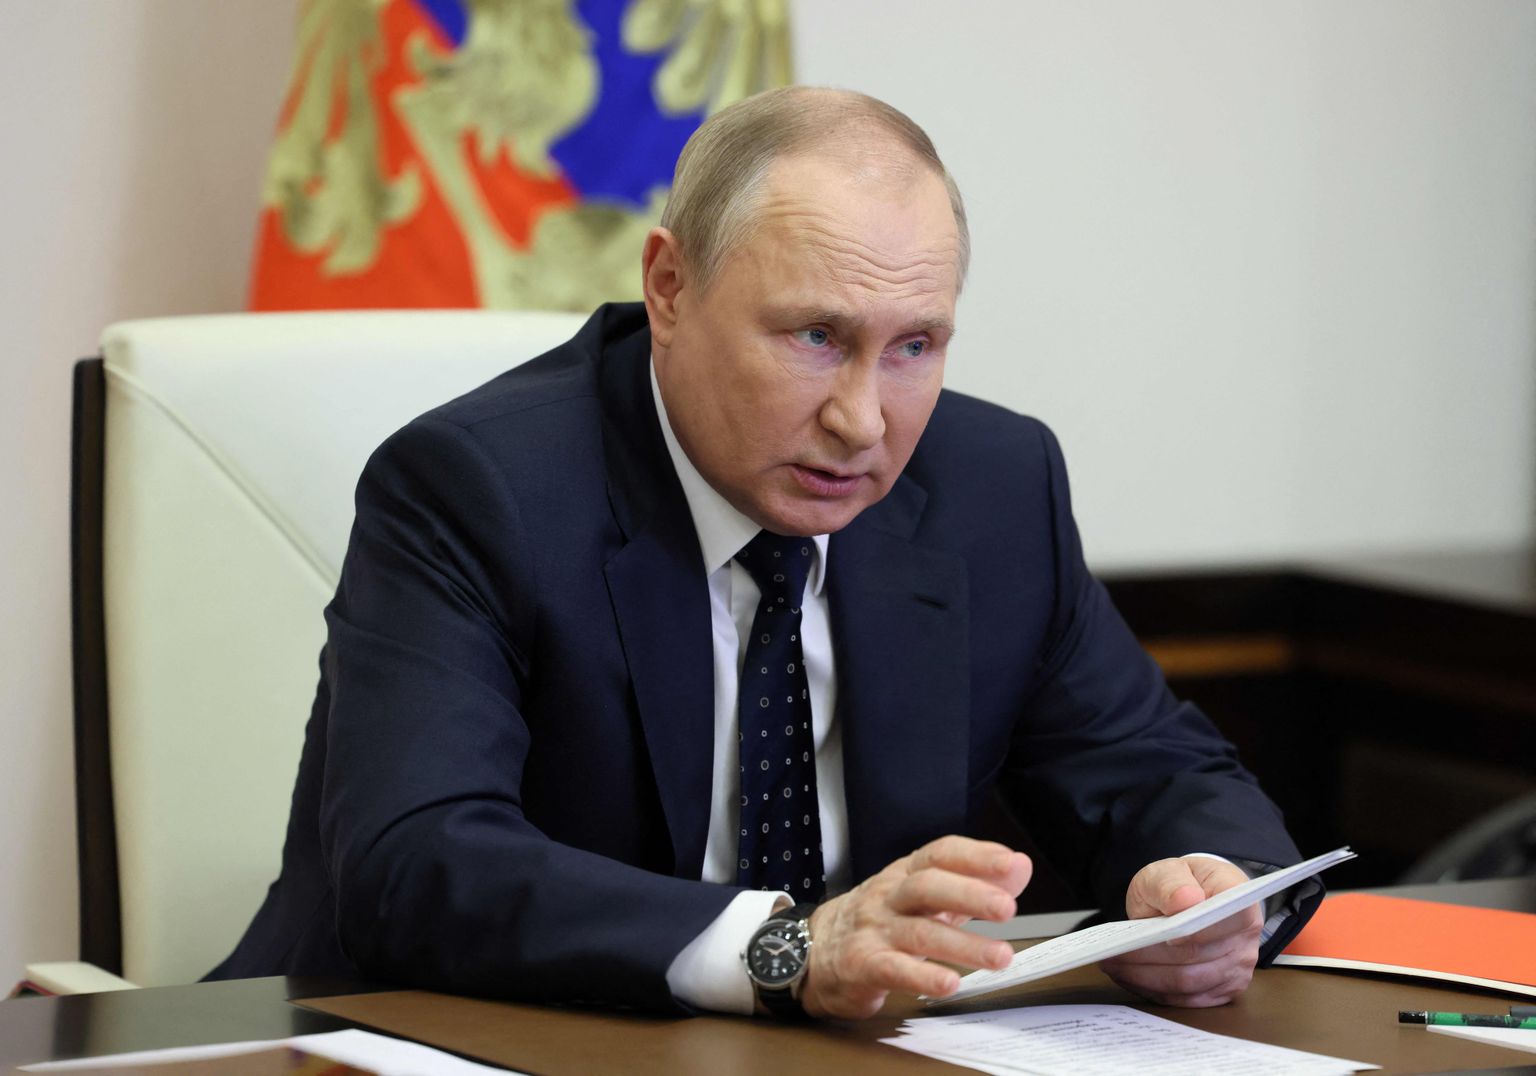 Venemaa president Vladimir Putin kohtus 20. mail 2022 Moskva lähedal Novo-Ogarjovo residentsis video teel Venemaa julgeolekunõukogu liikmetega